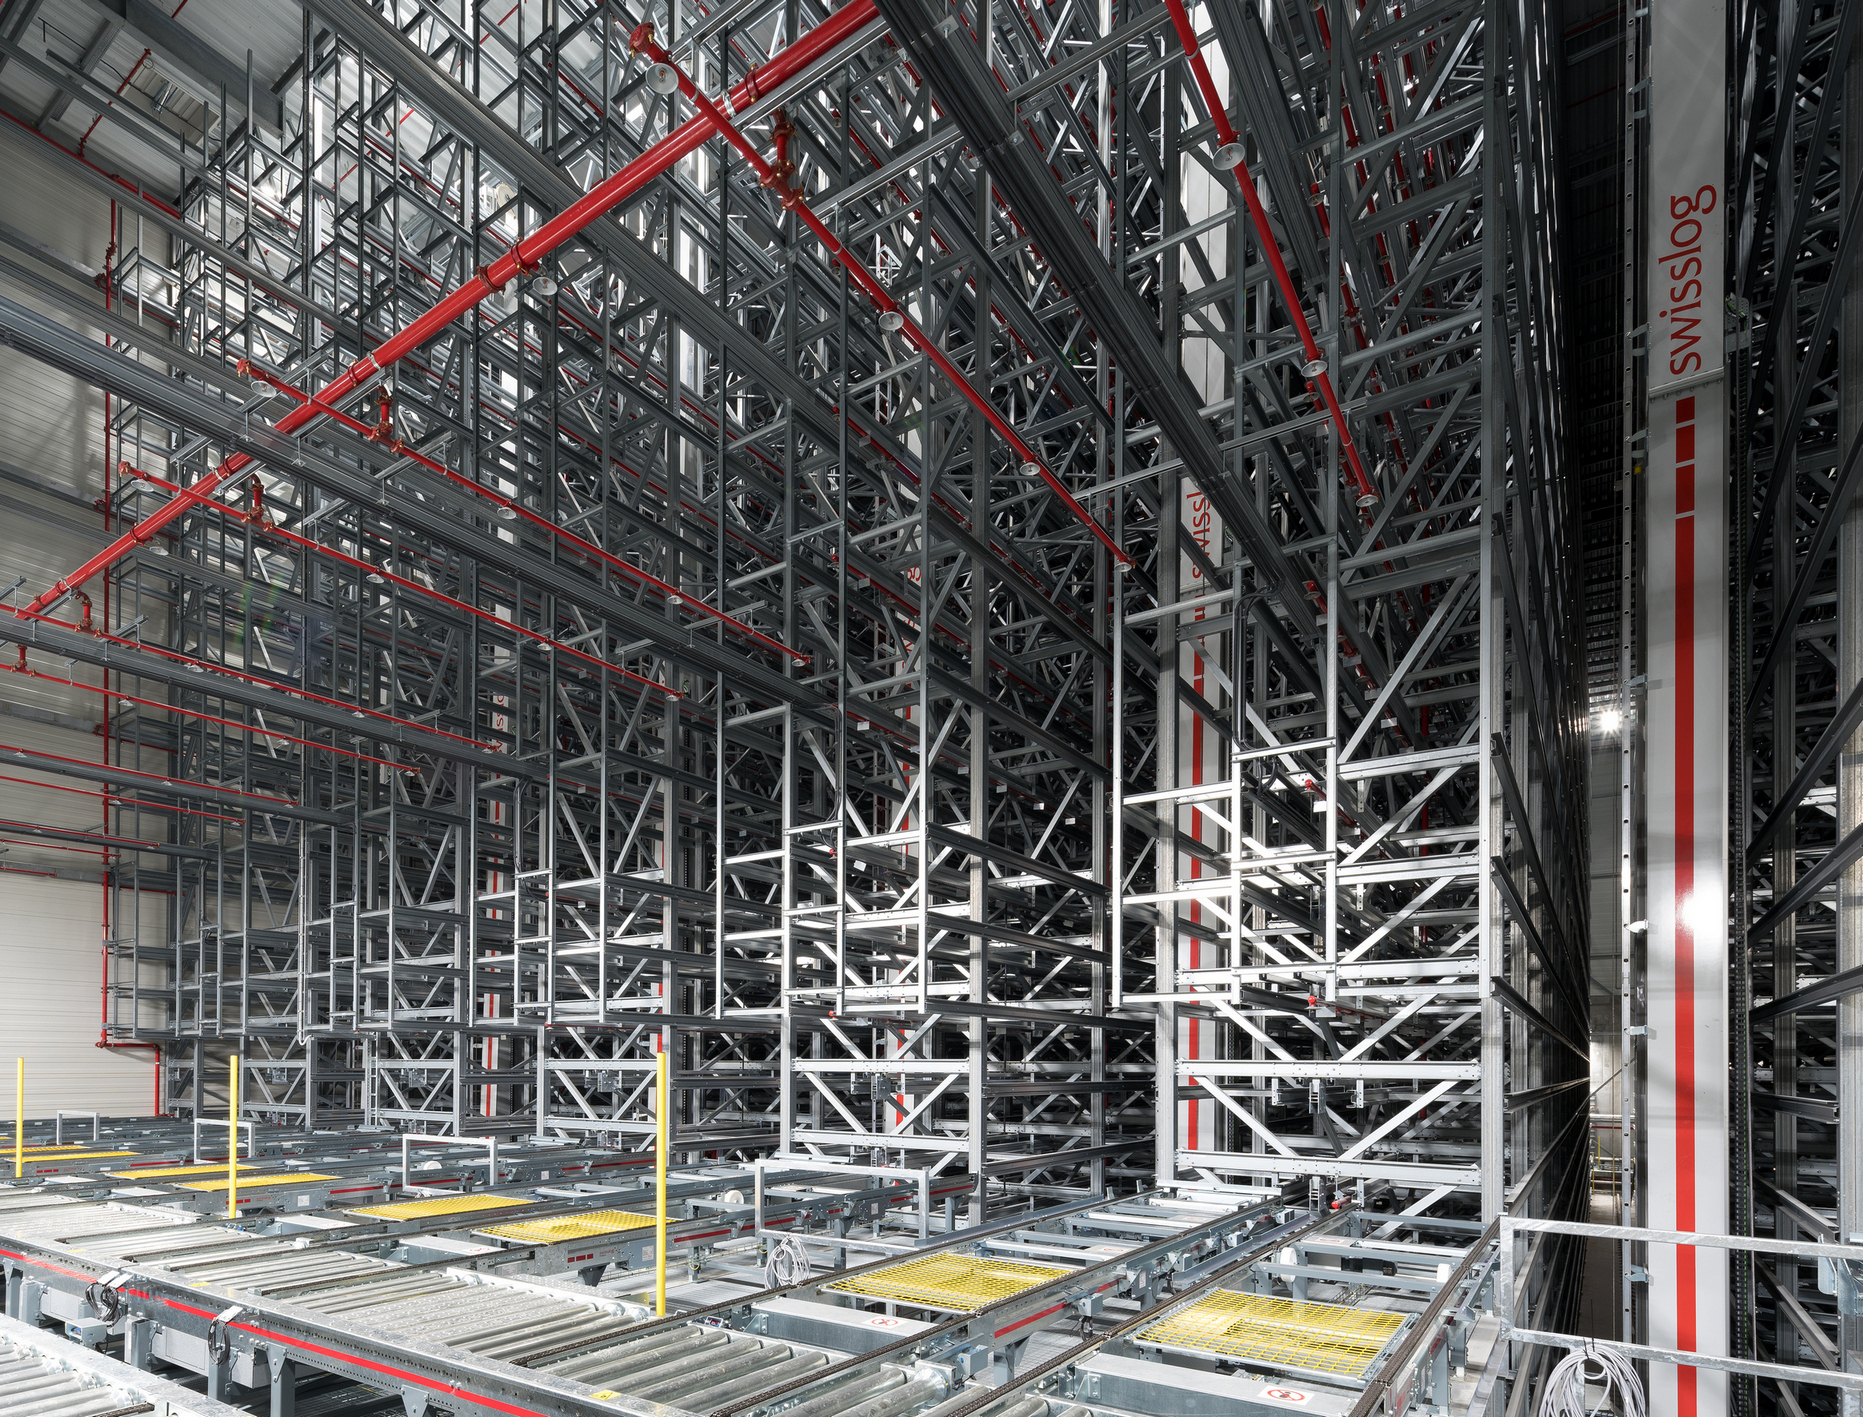 Ein Blick ins Hochregallager verdeutlicht die Dimensionen: Sieben Regalbediengeräte steuern vollautomatisch die 15.000 Europaletten-Plätze an.